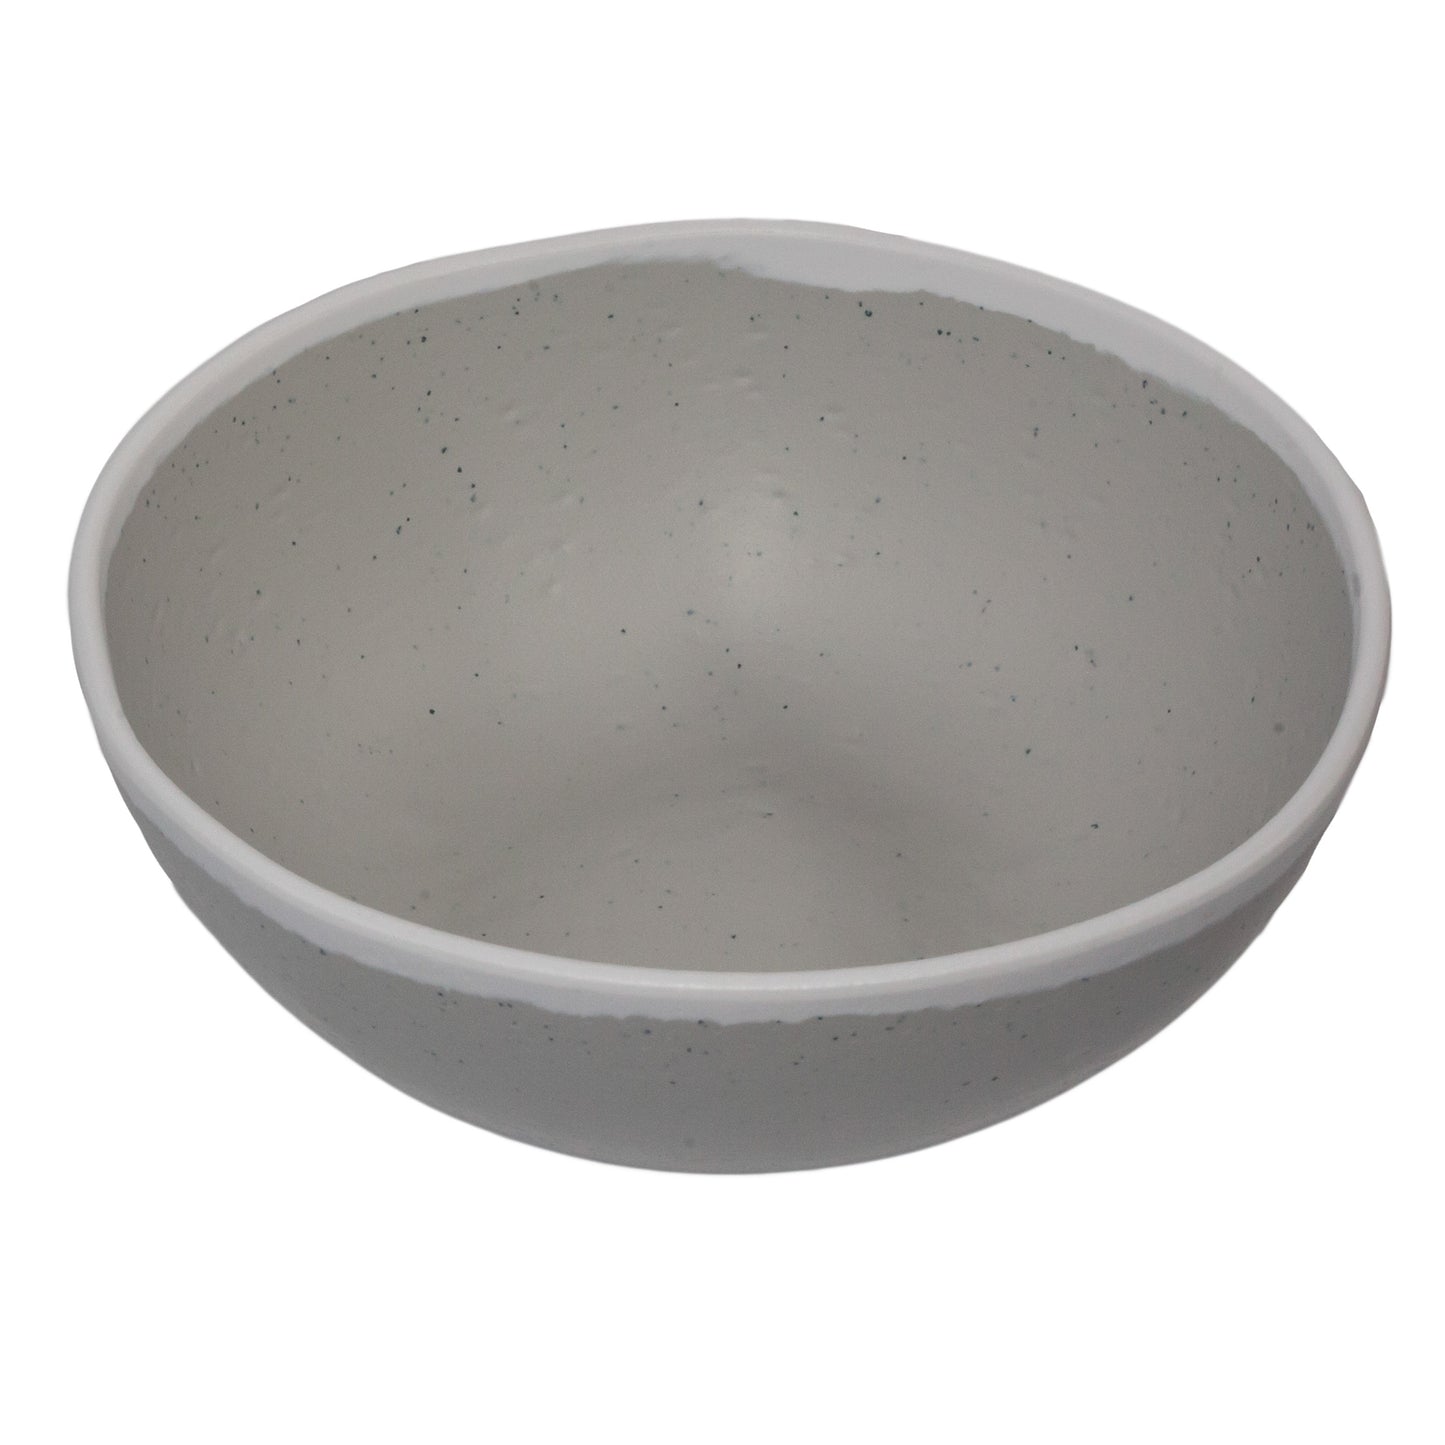 1.5 qt. Dove Gray, Melamine, Large Entree Bowl, (1.7 qt. rim-full), 8.25" Top Dia., 2.75" Deep, G.E.T. Pottery Market Glazed (12 Pack)